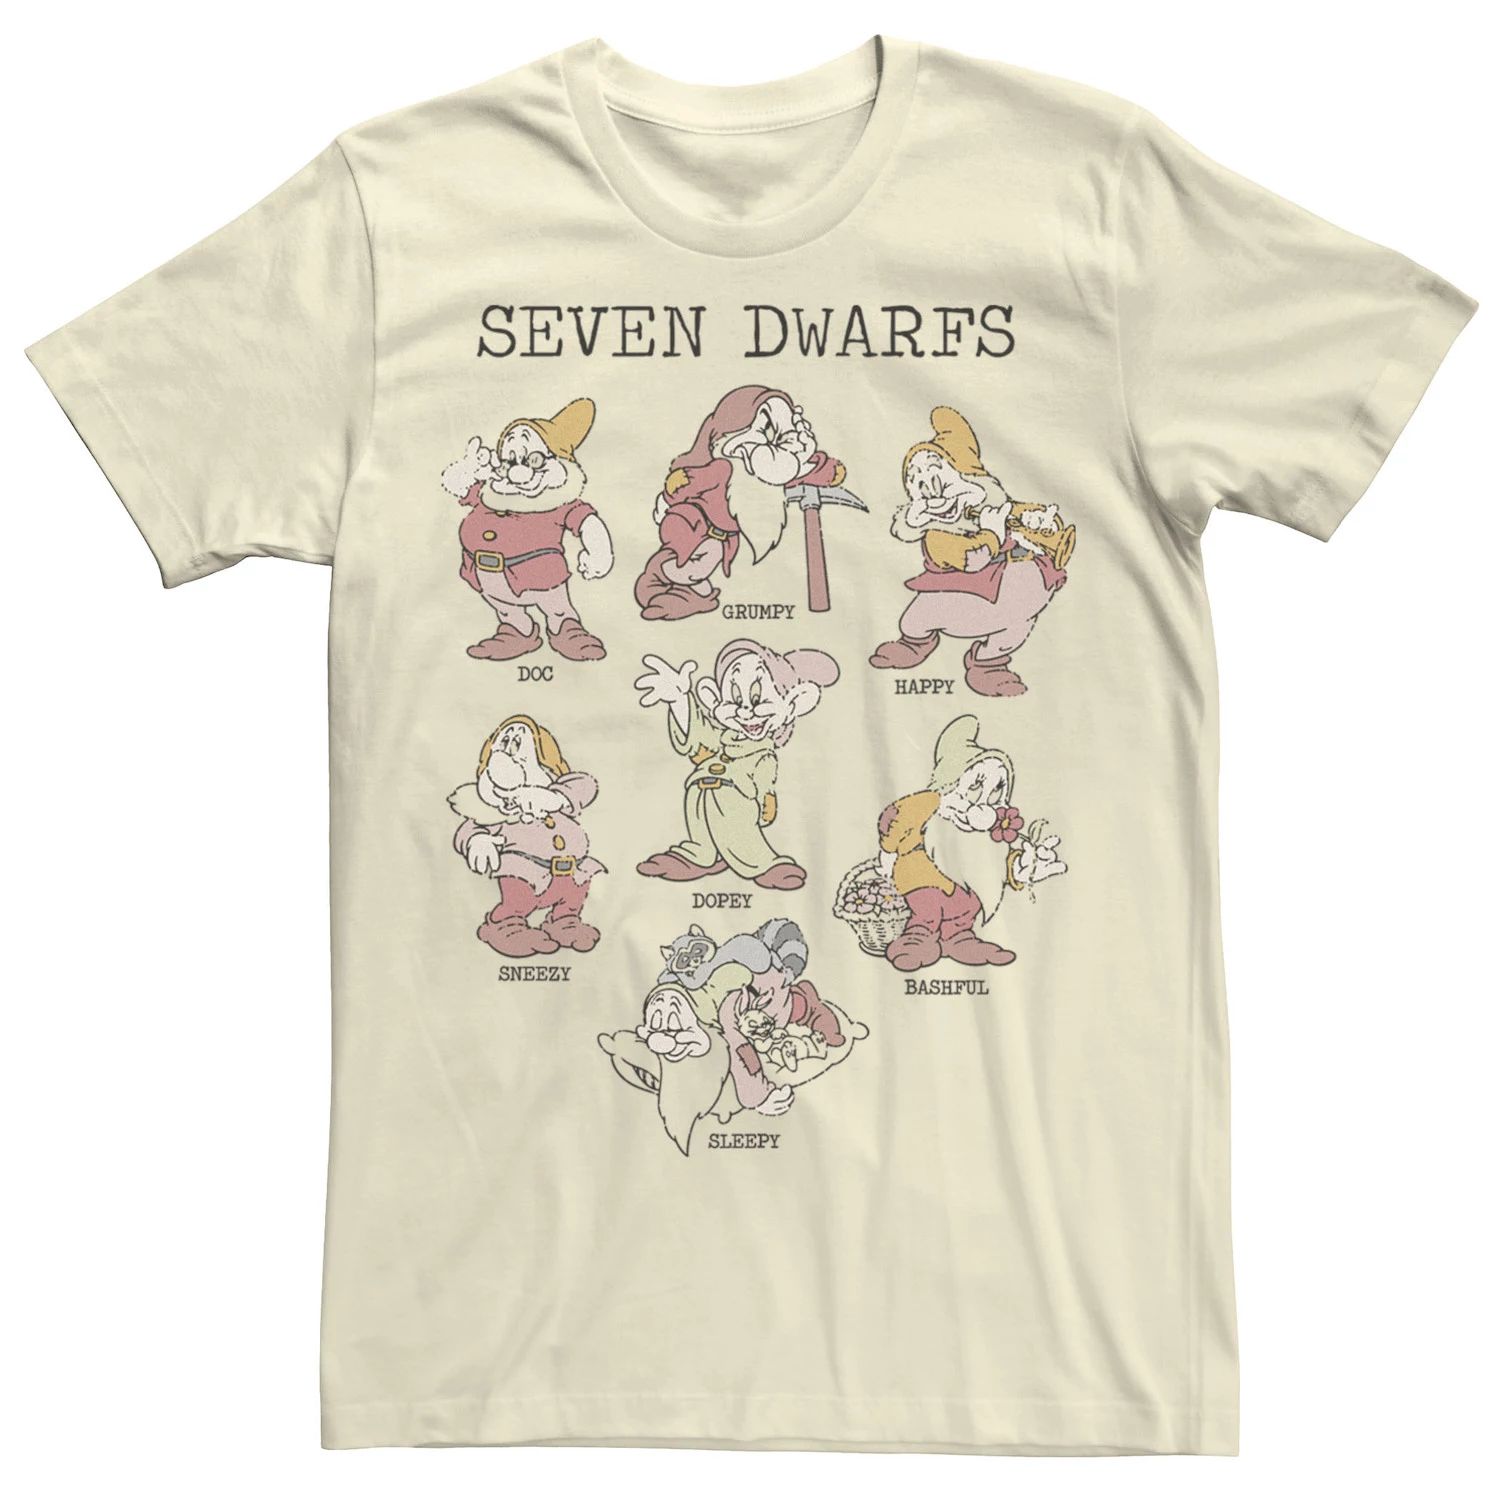 Мужская футболка с портретами Белоснежки и семи гномов Disney